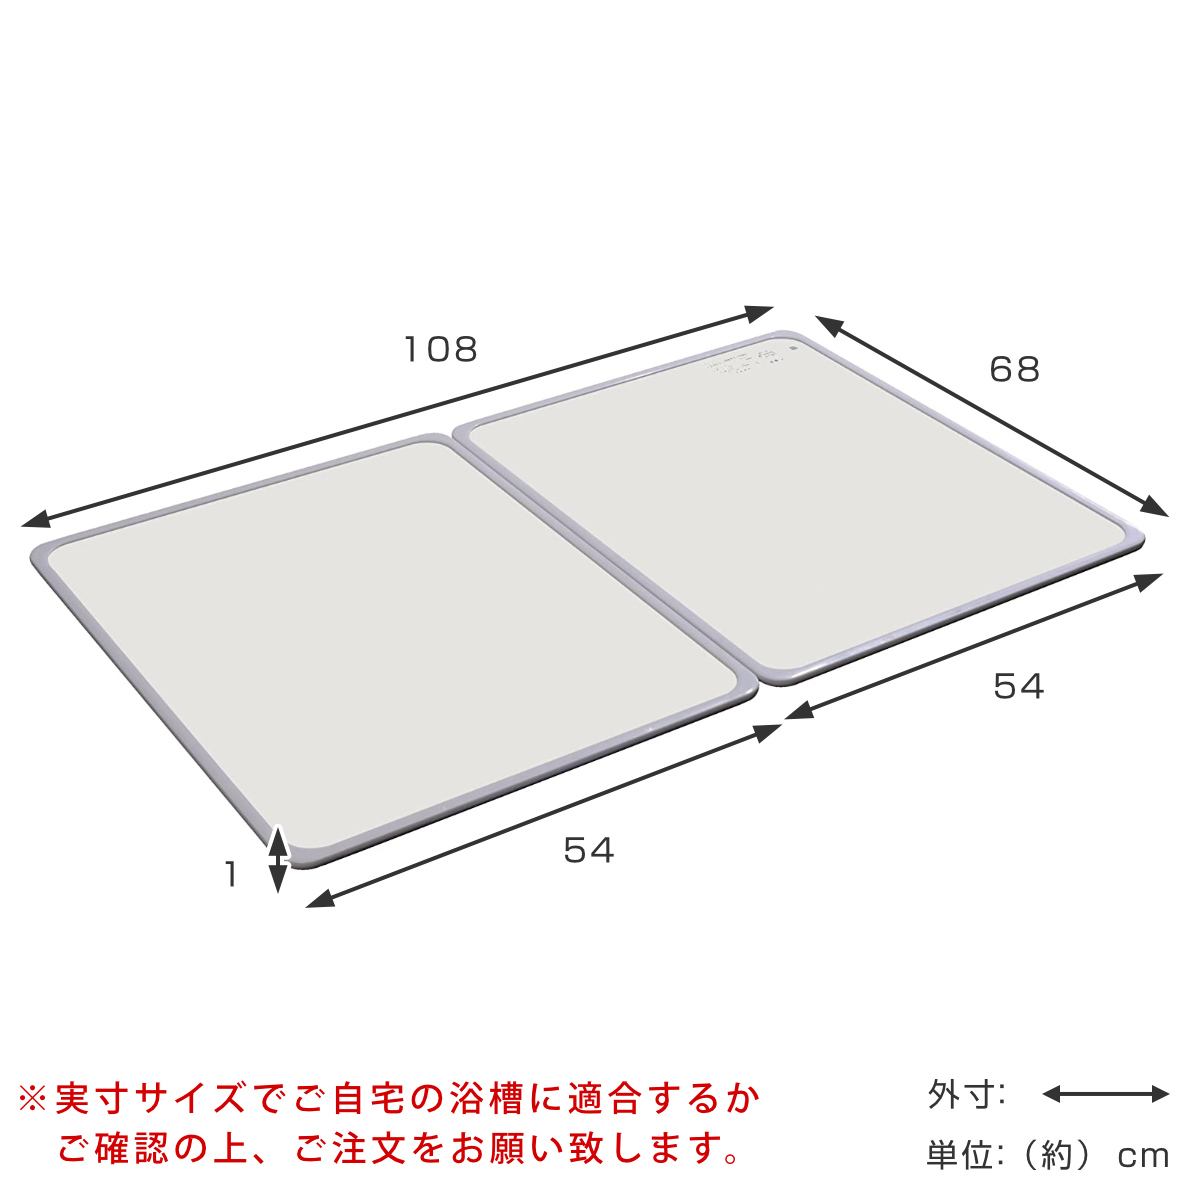 特典付き 抗菌 風呂ふた 組み合わせ 70×110cm 用 M11 2枚組 日本製